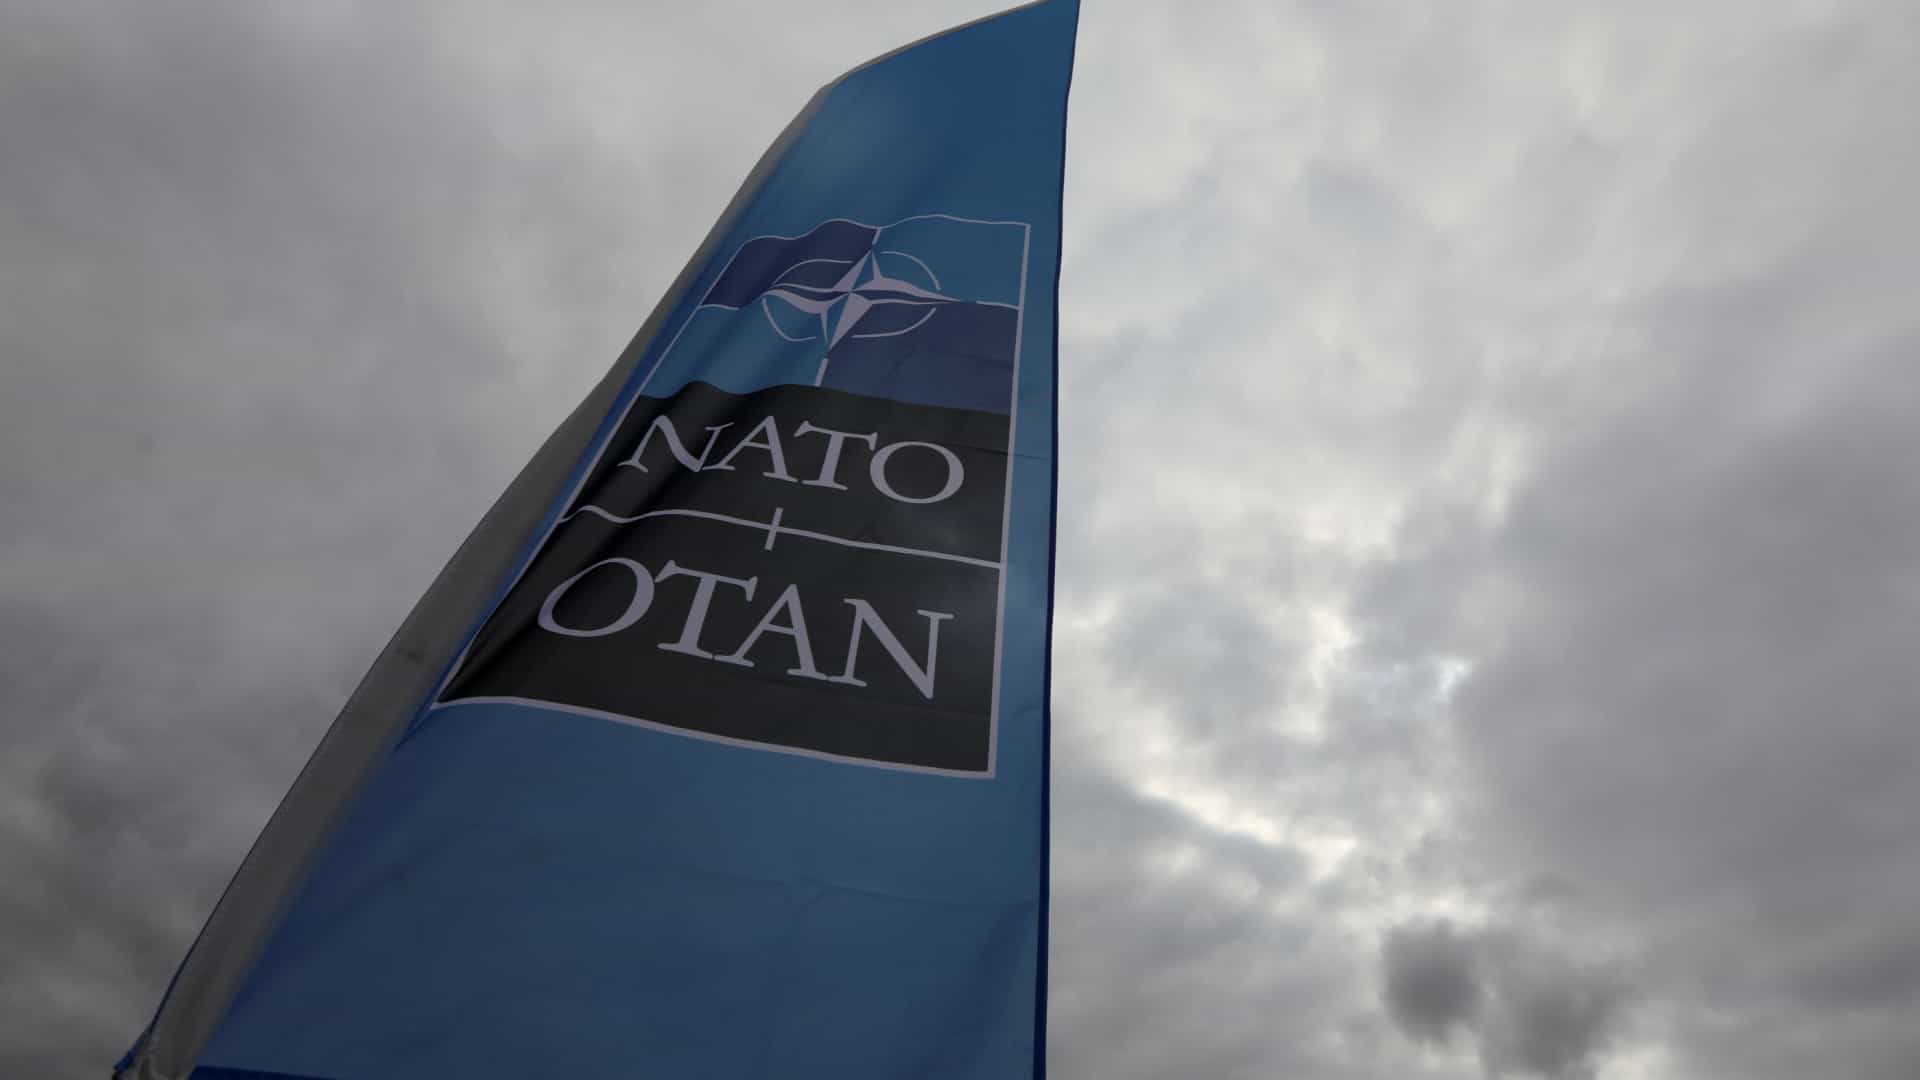 NATO saúda decisão de julgar suspeitos de abate de avião do voo MH17